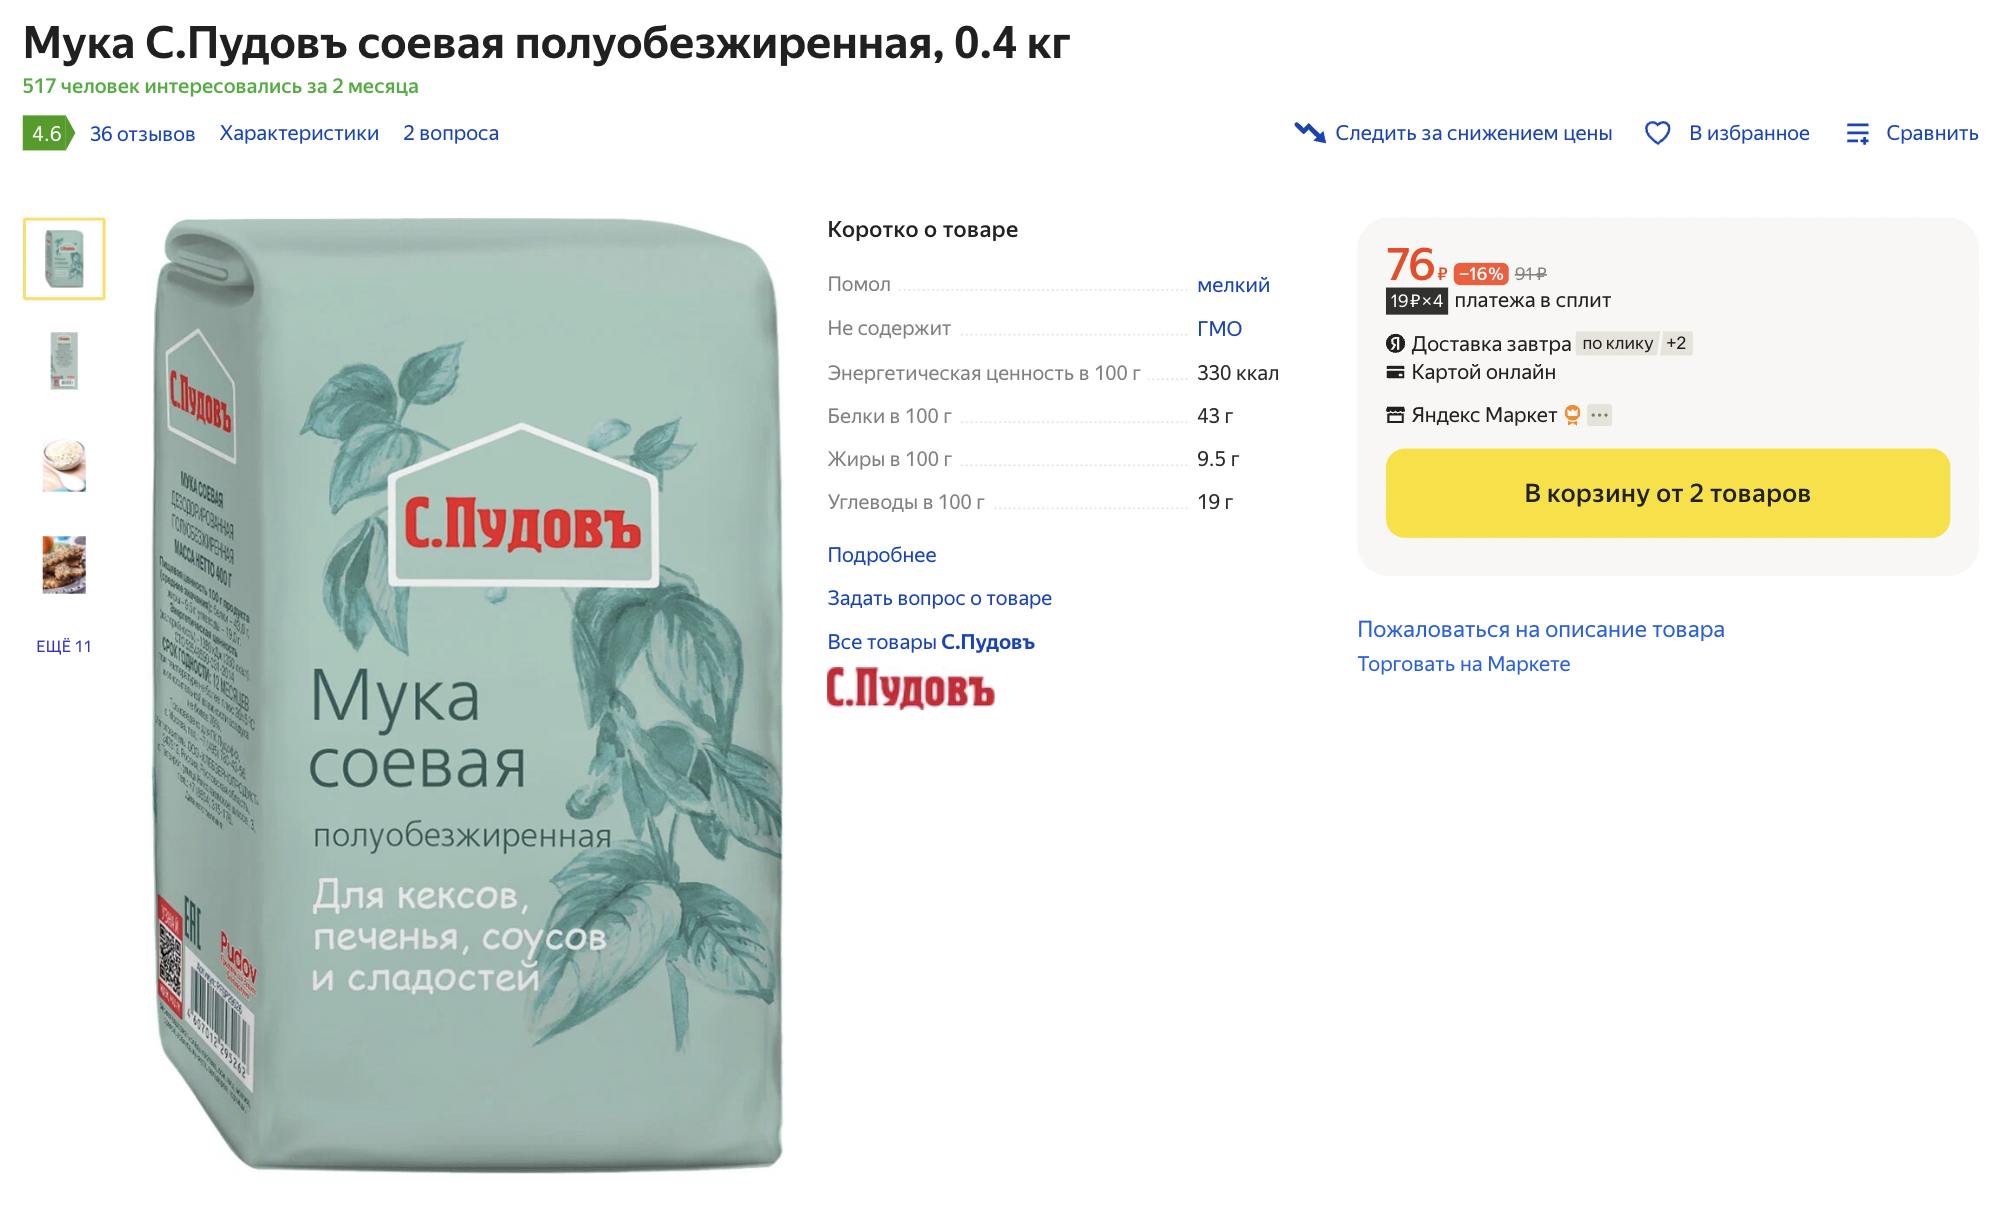 Нутовую и соевую муку можно купить на маркетплейсах. Источник: market.yandex.ru